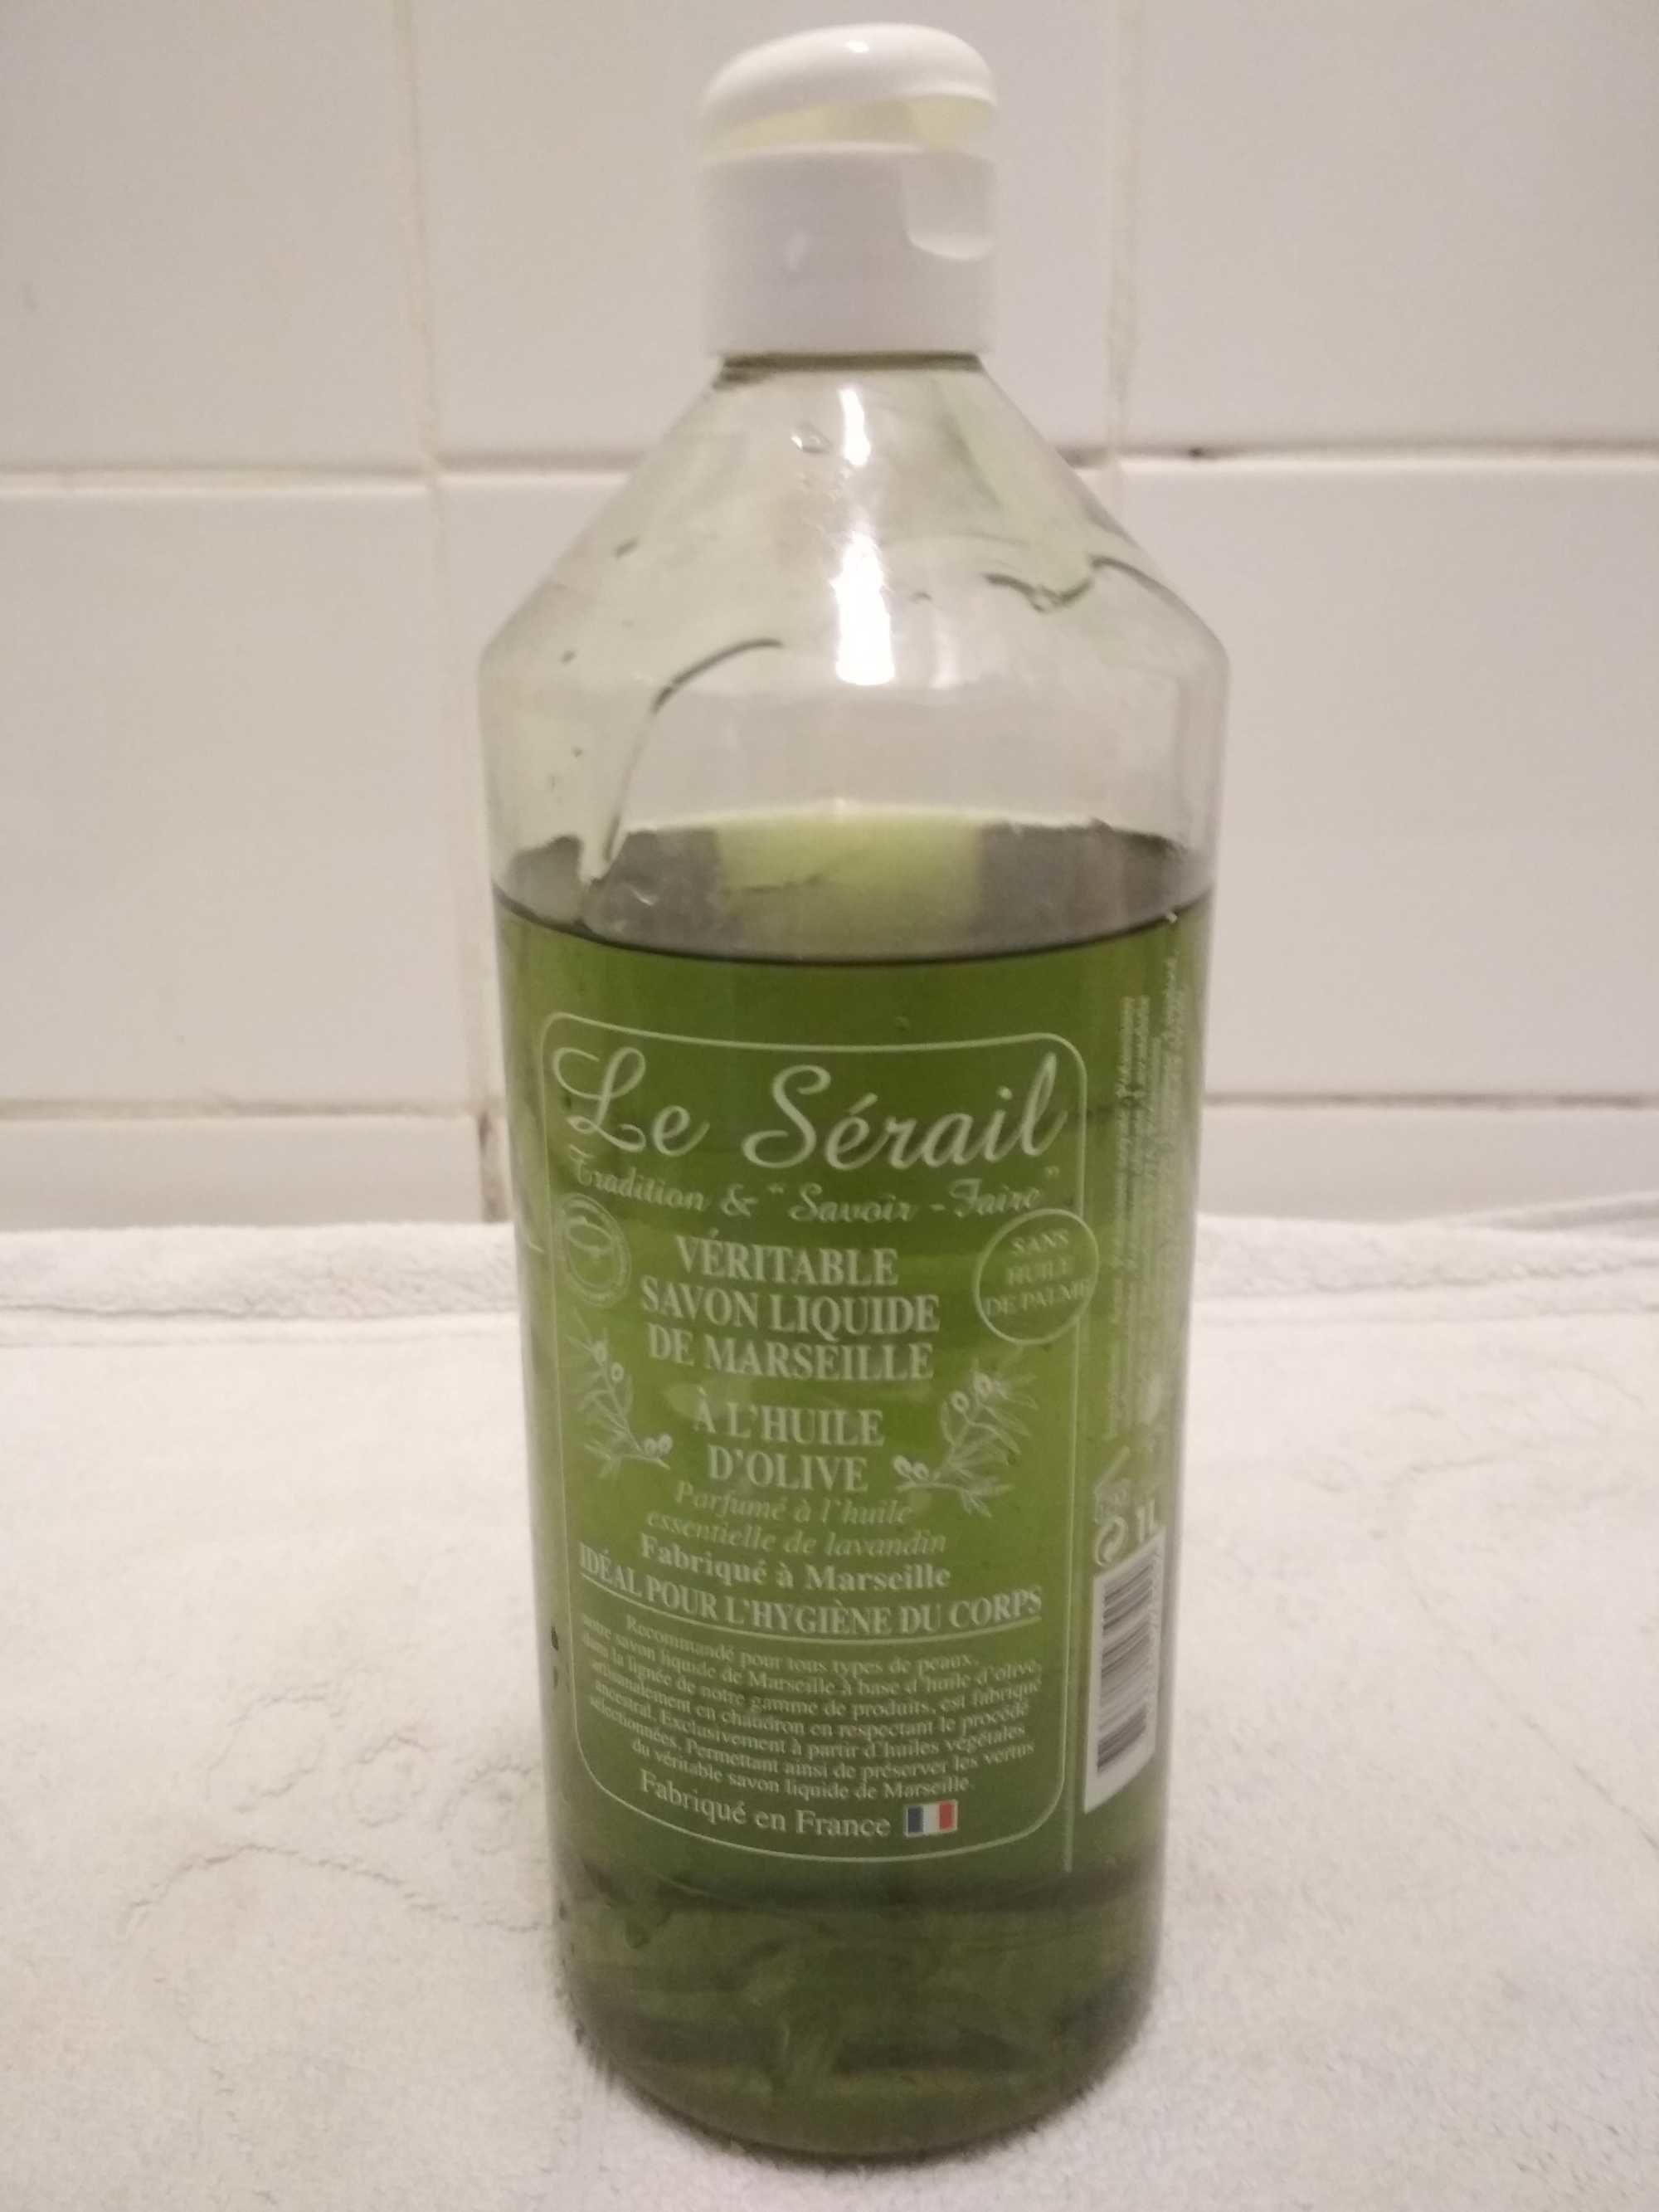 Véritable savon liquide de Marseille a l'huile d'olive Le Sérail - Produit - fr